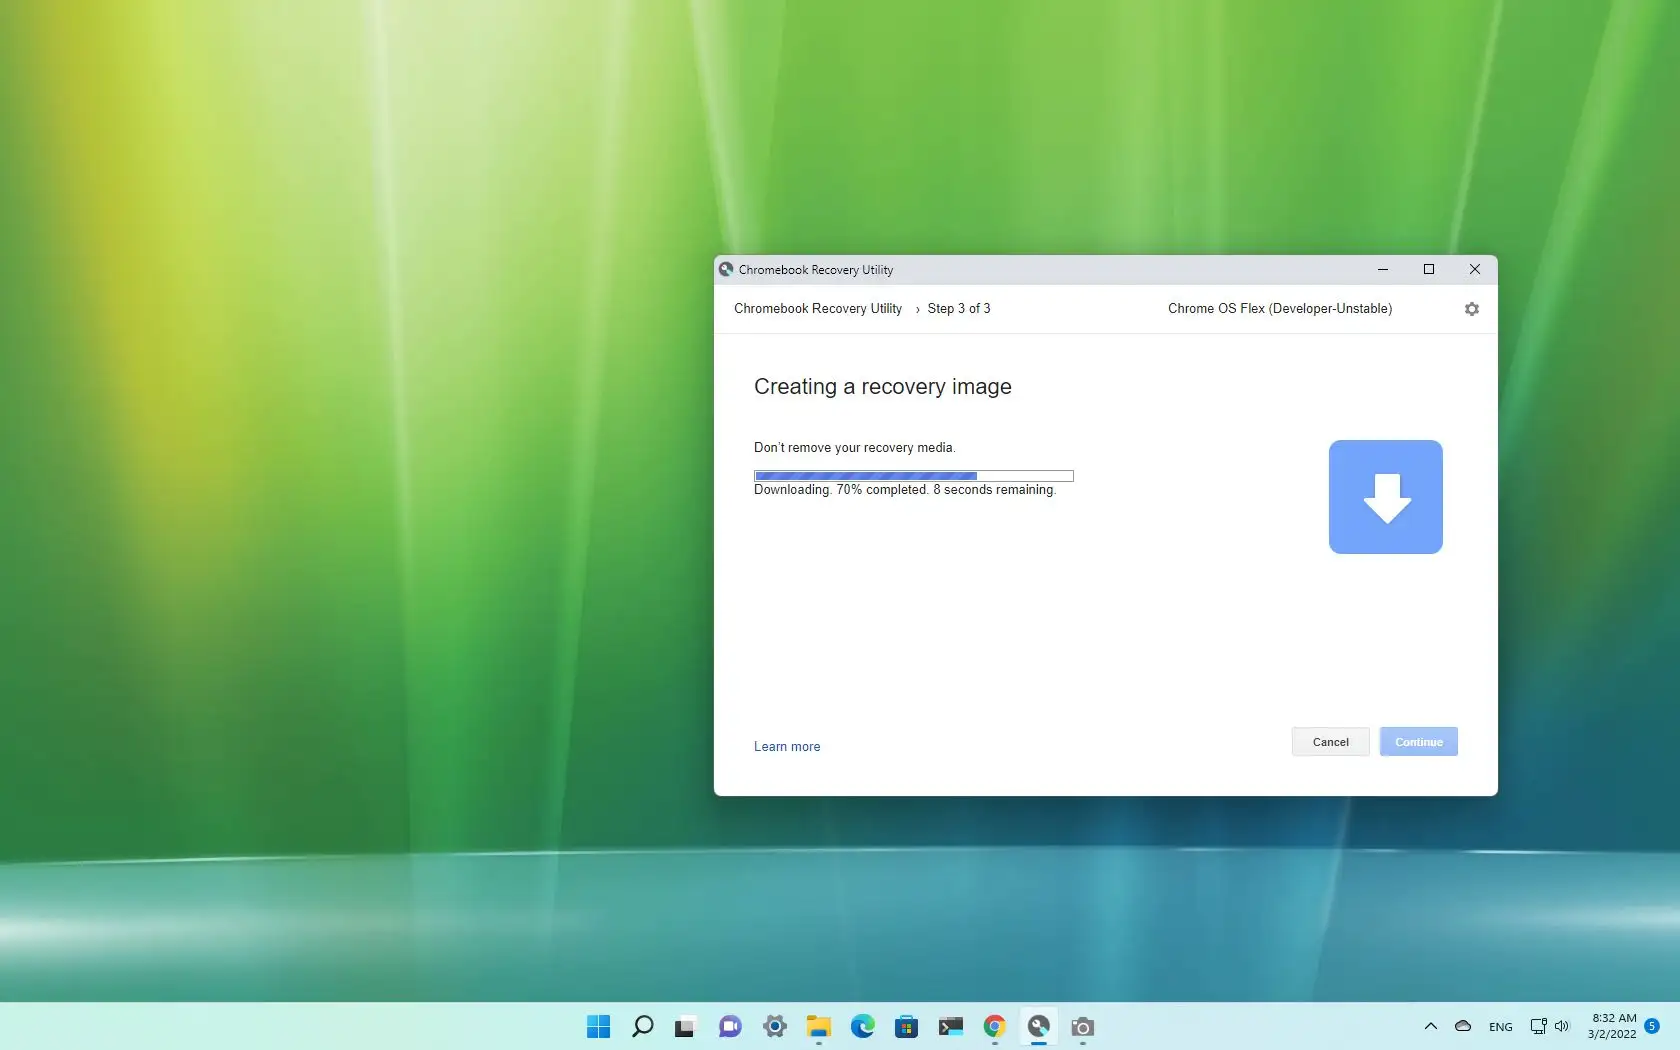 Slik installerer du ChromeOS Flex på en hvilken som helst bærbar datamaskin